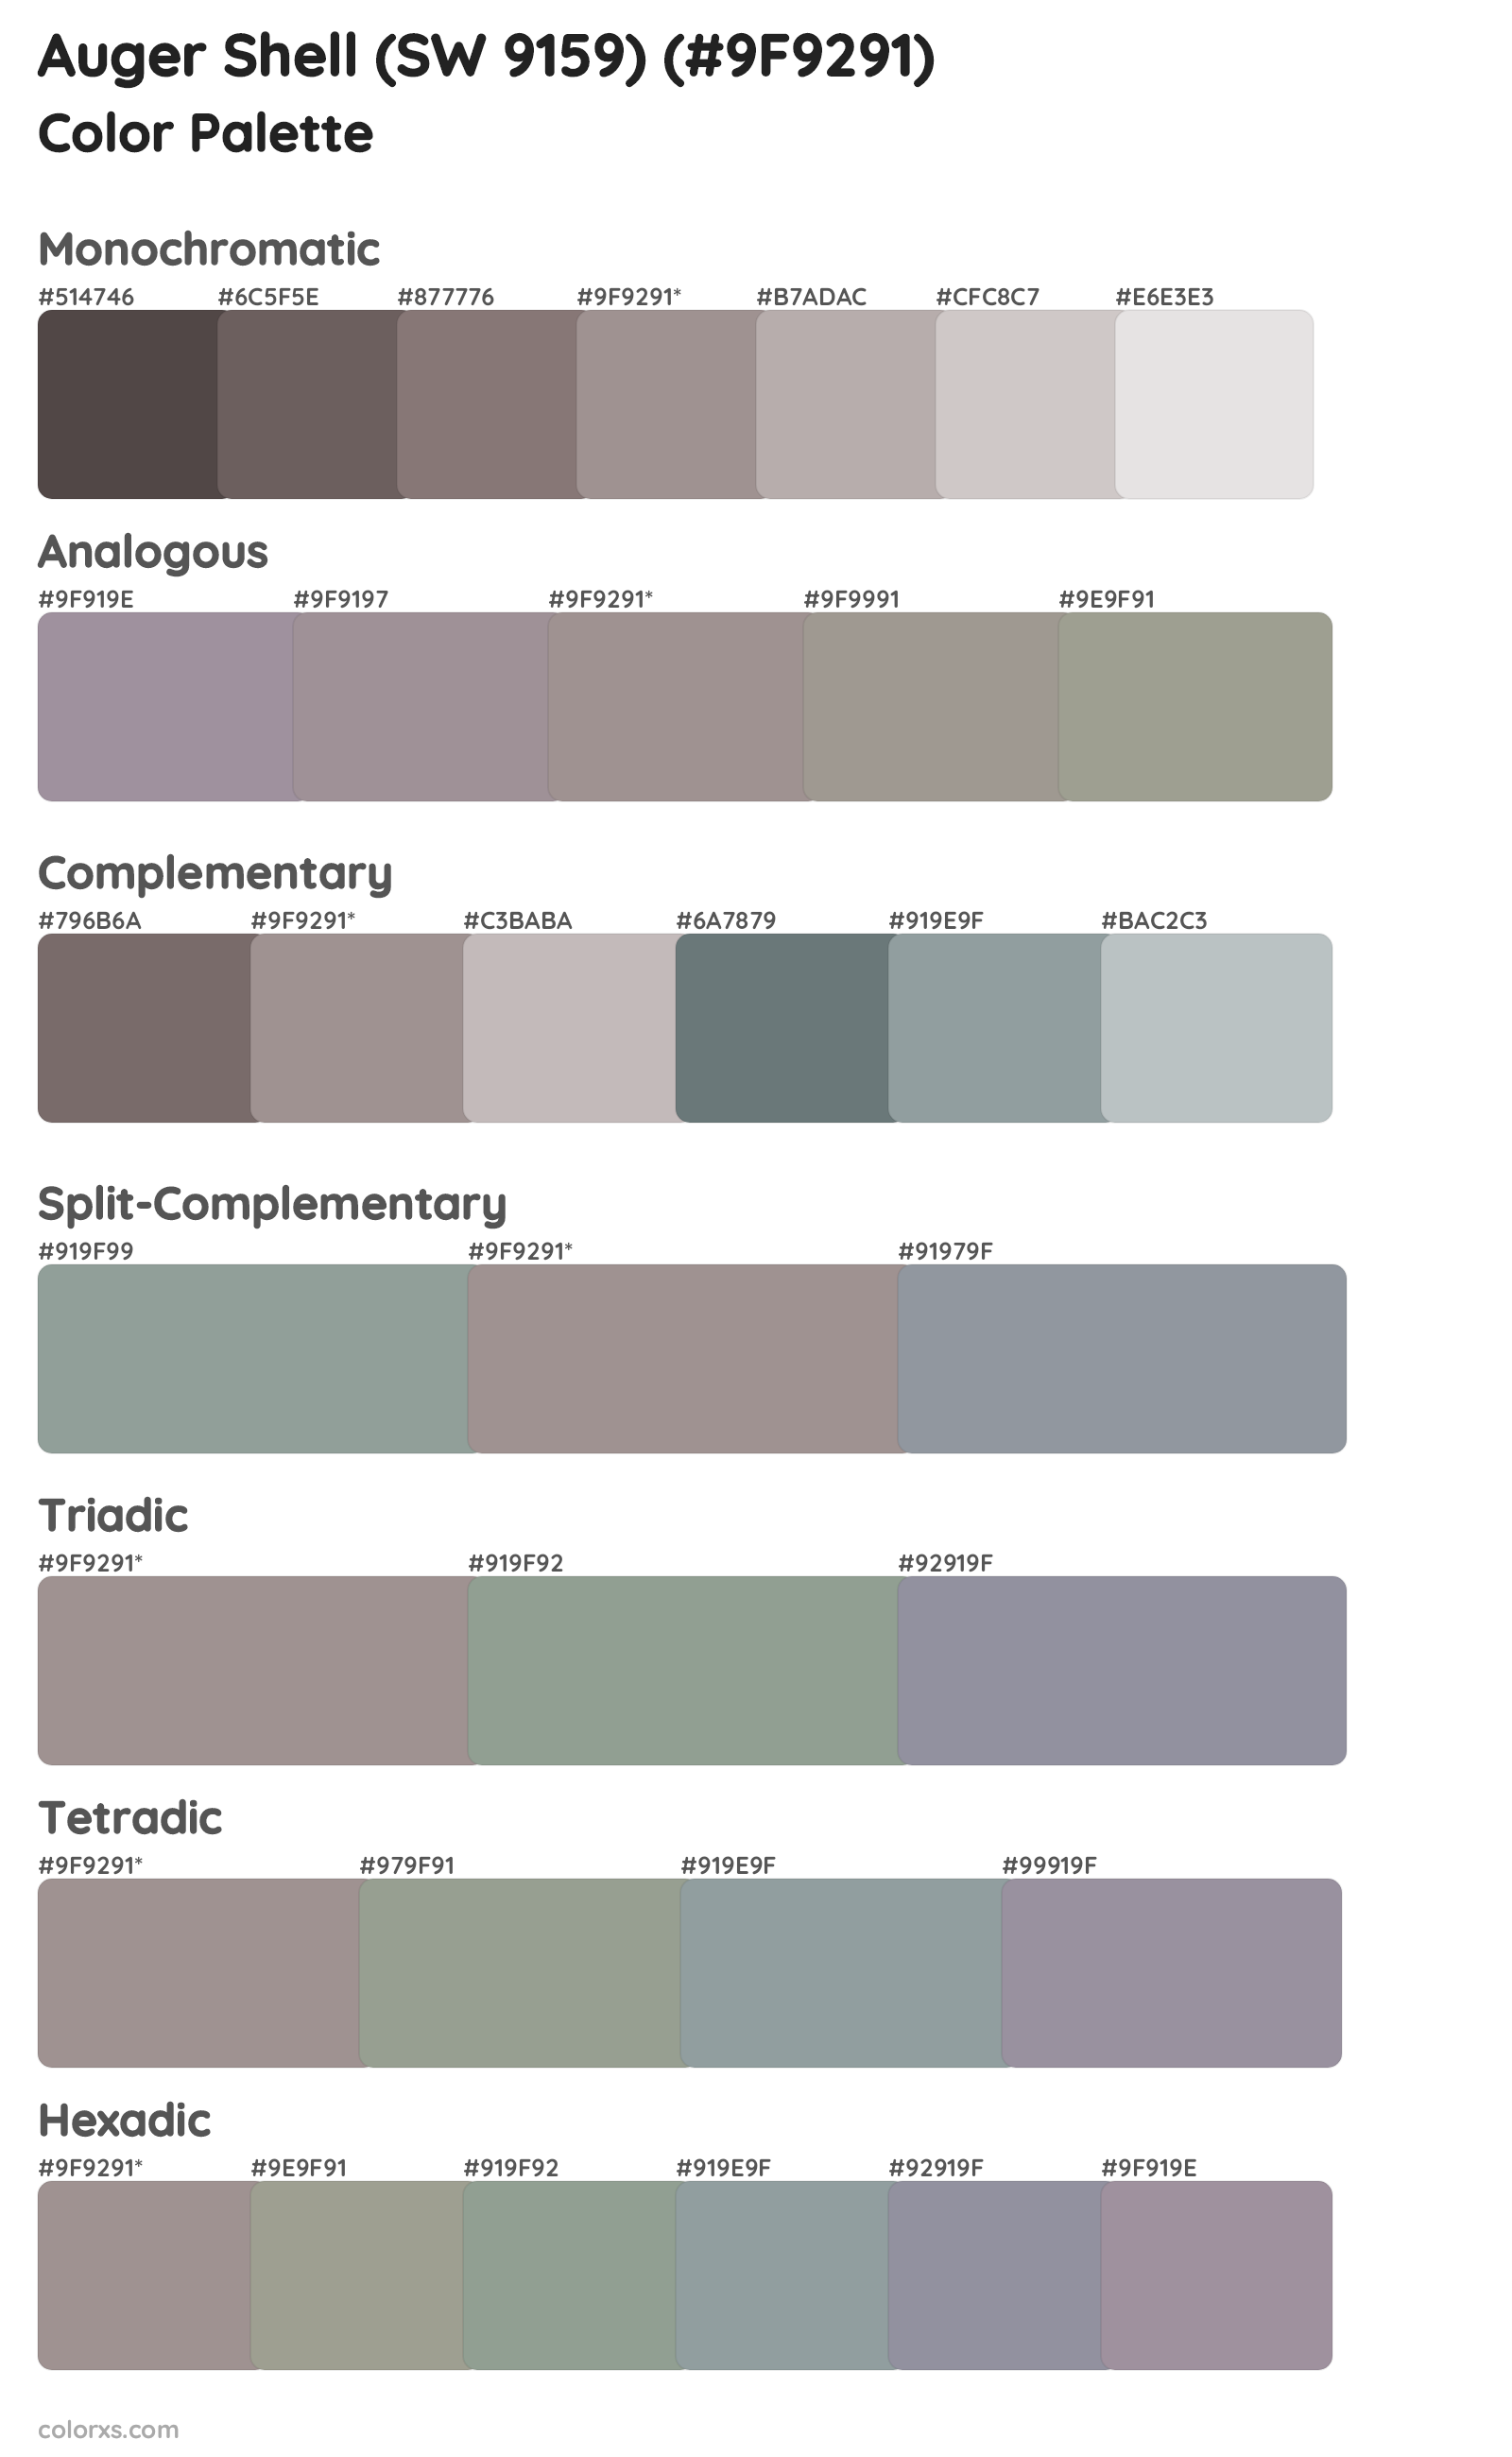 Auger Shell (SW 9159) Color Scheme Palettes